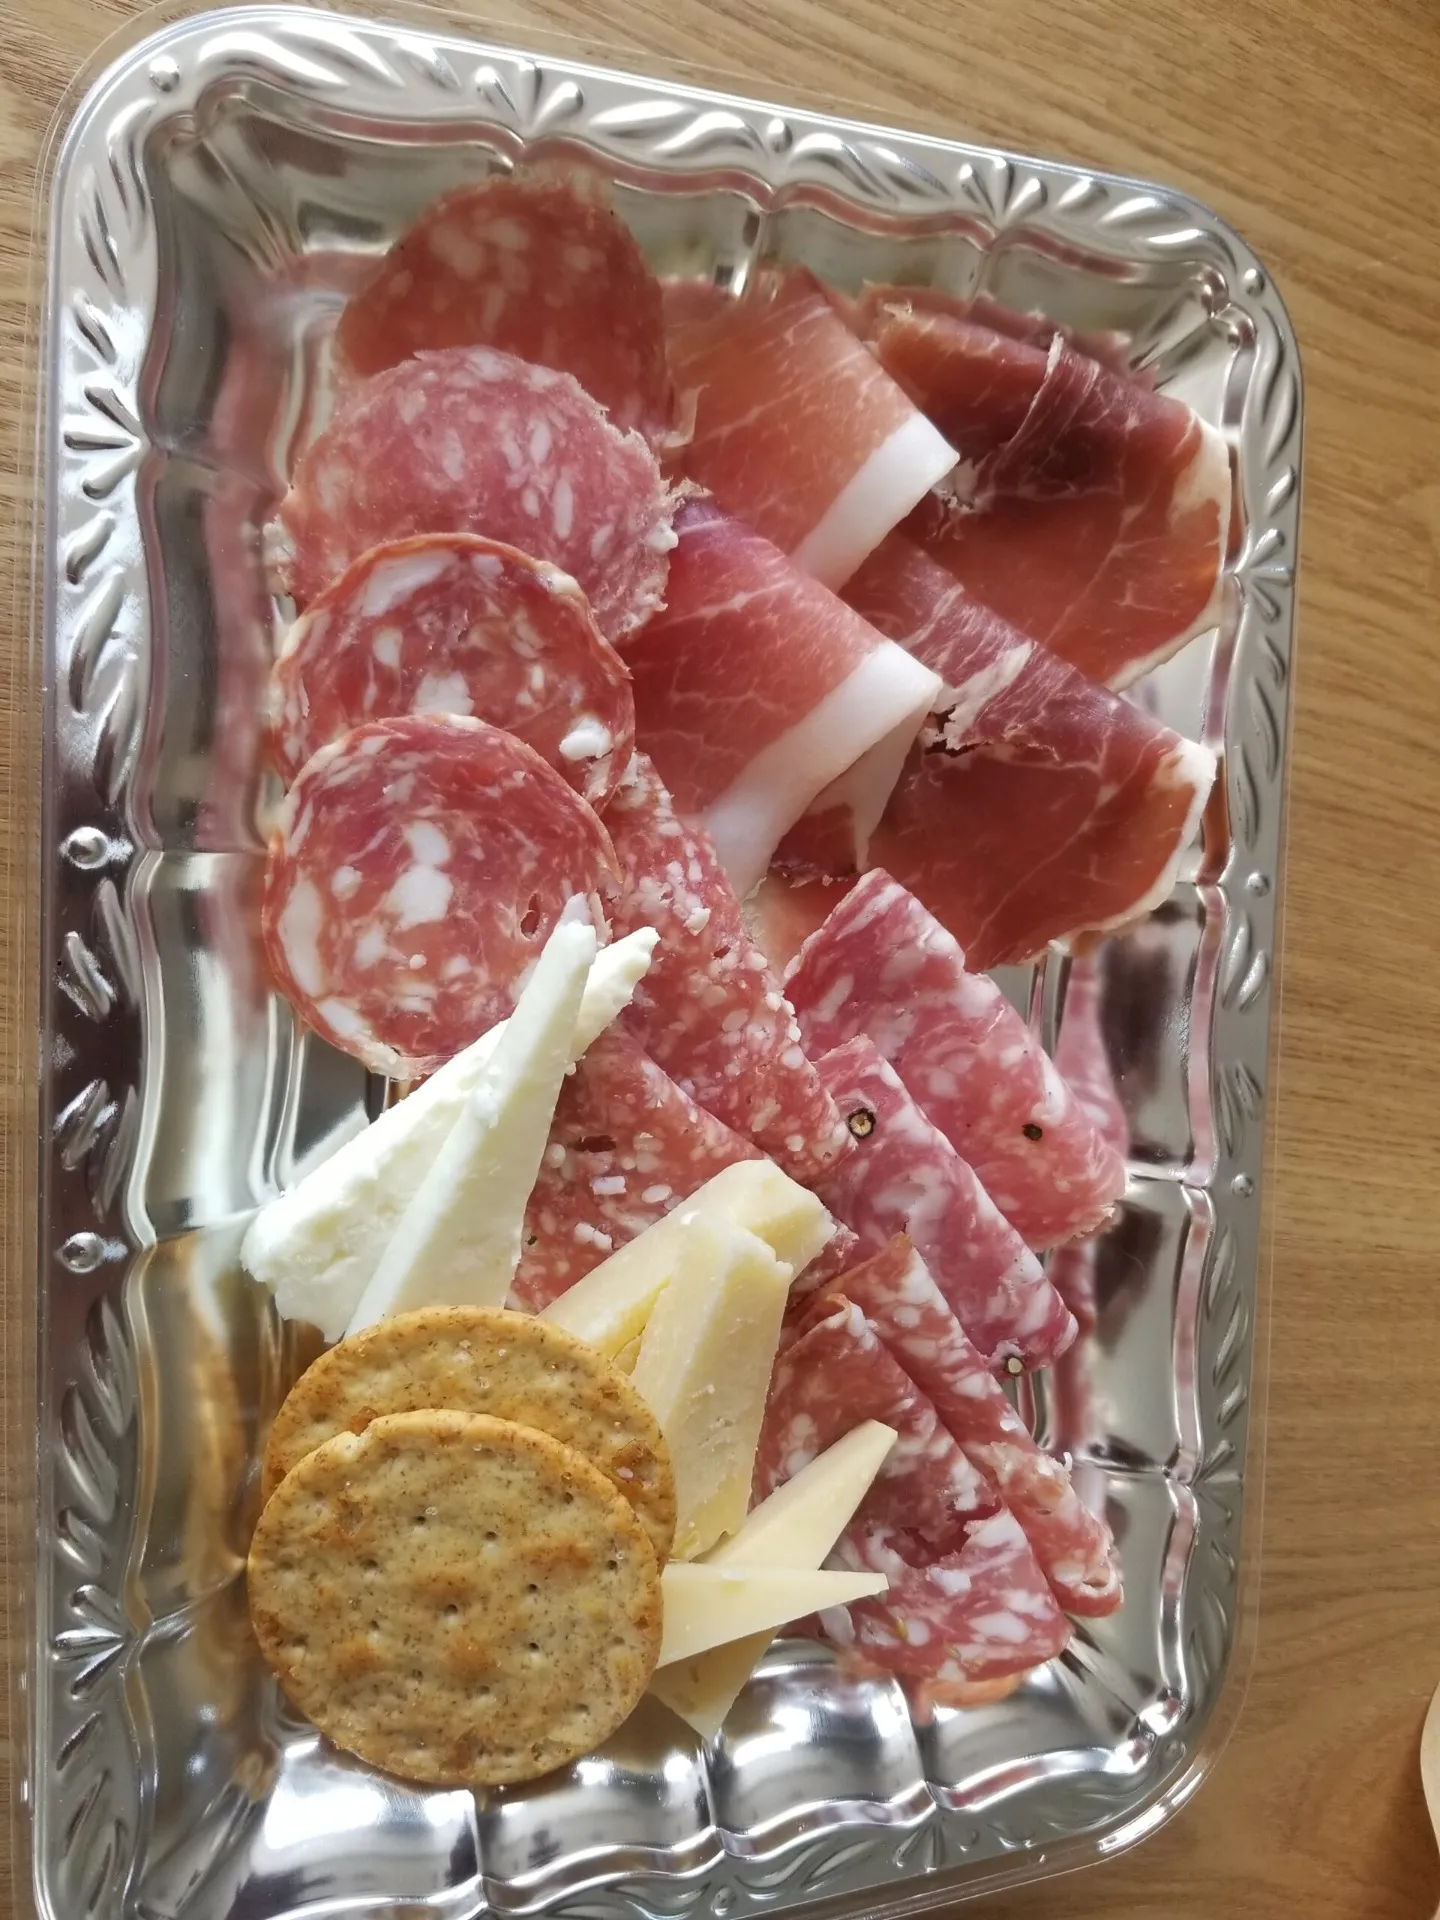 土佐町でイタリア産のハムやチーズが食べられるのはご存知でしょうか。